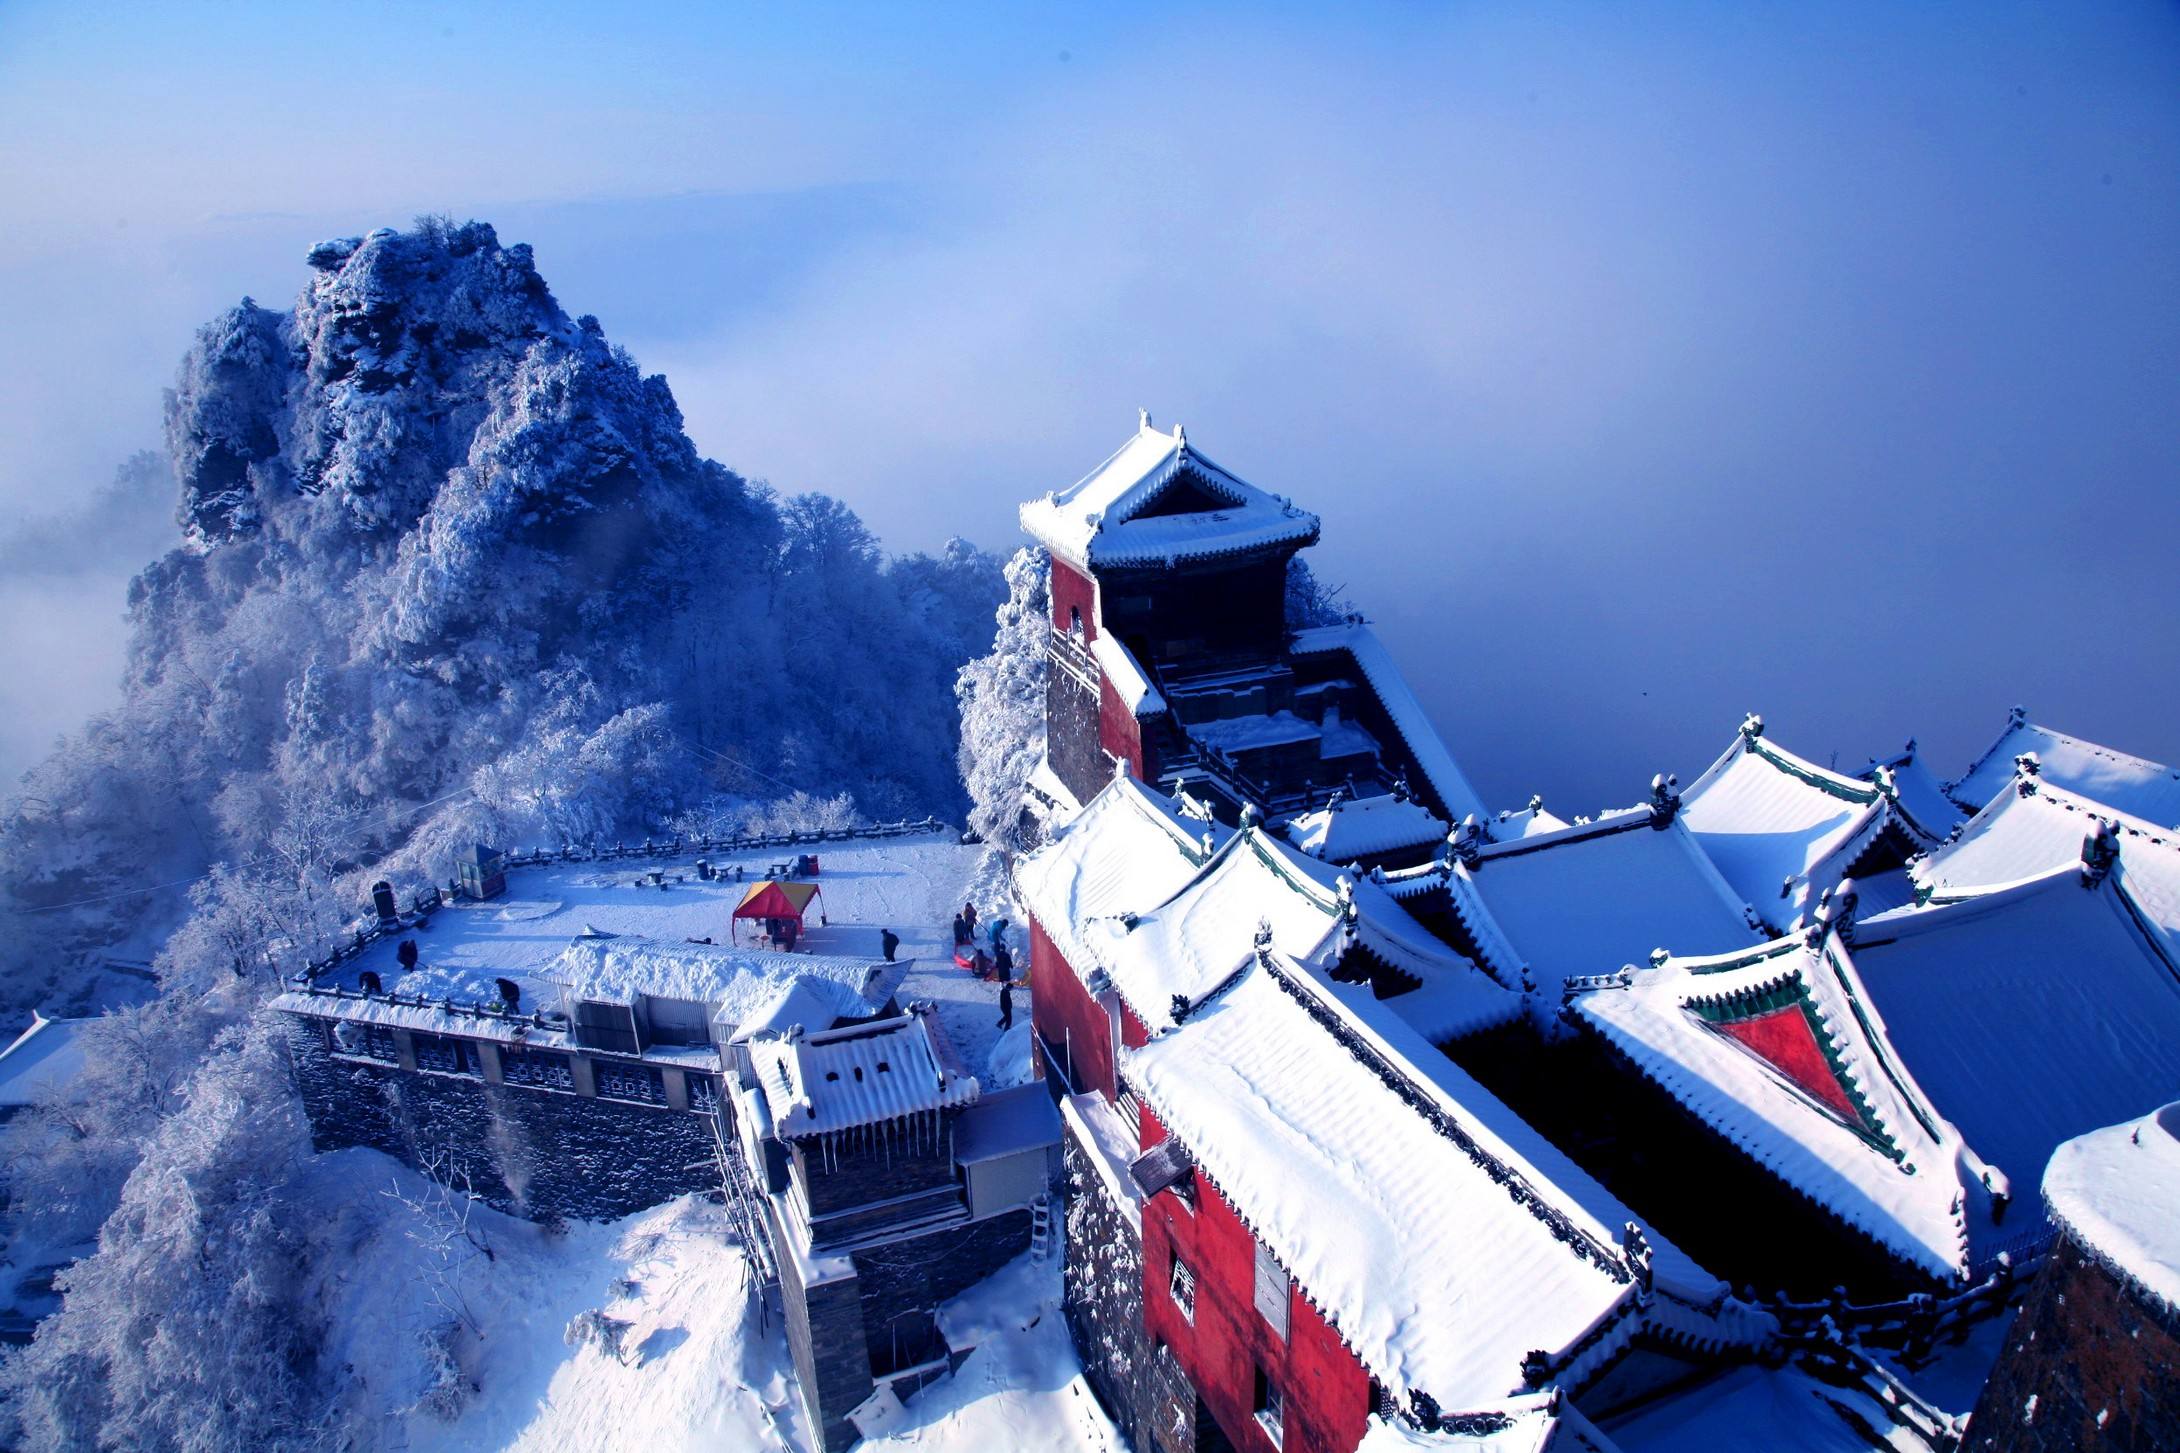 黄鹤楼位于湖北省武汉市长江南岸的武昌蛇山之巅,为国家5a级旅游景区